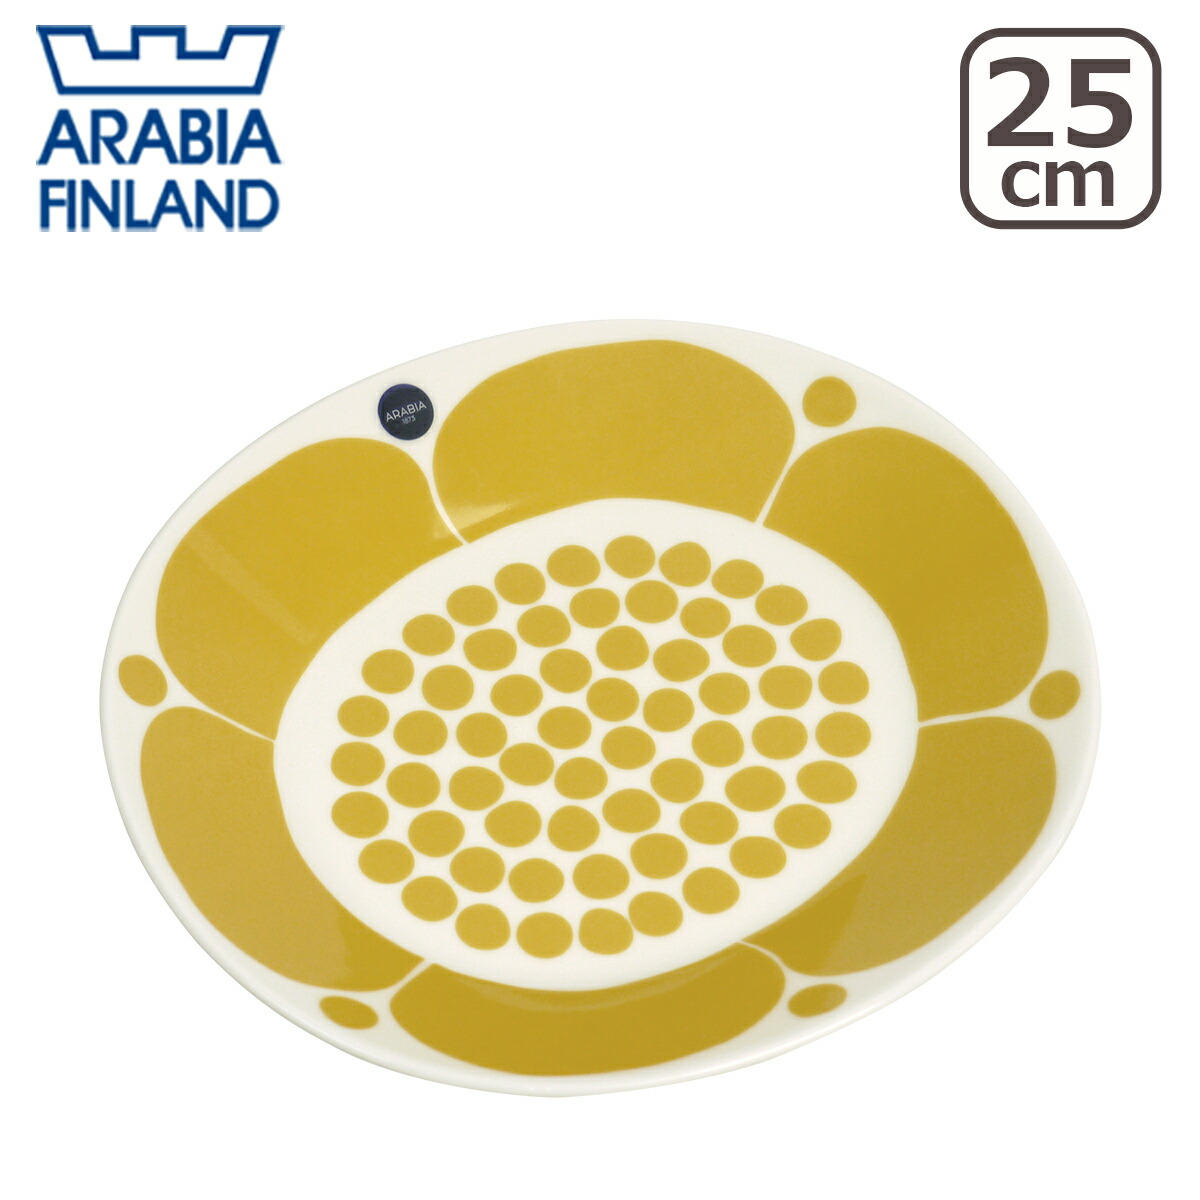 アラビア スンヌンタイ オーバルプレート 25cm Arabia Sunnuntai 食器 皿